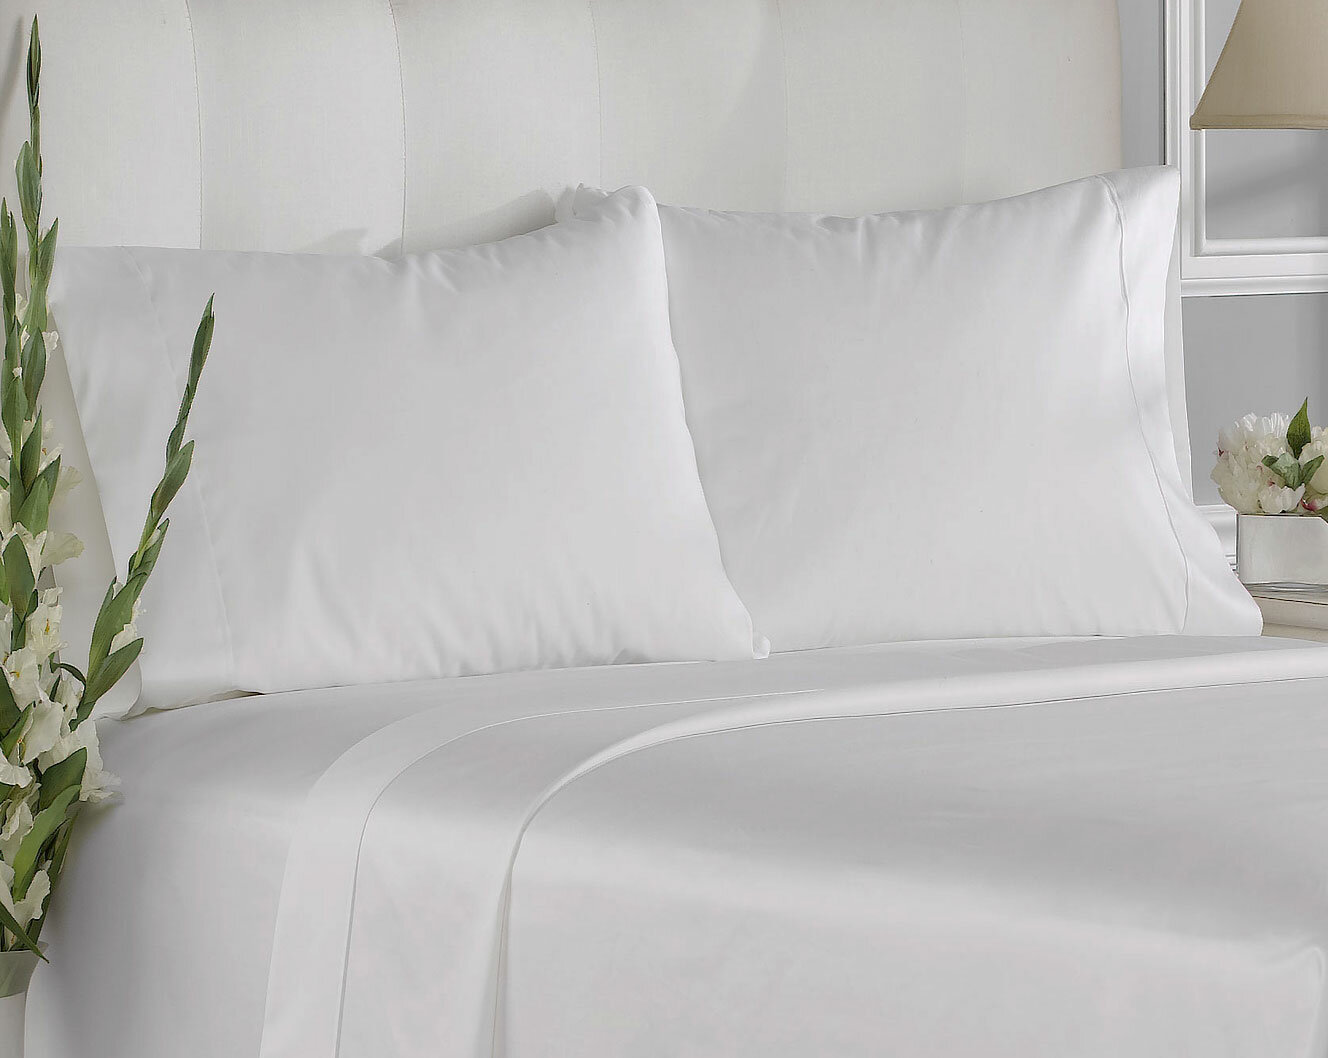 LUXURY HOTEL King Pillowcase White 100%Cotton 400 Tc Set Of 2 Pillow Cases